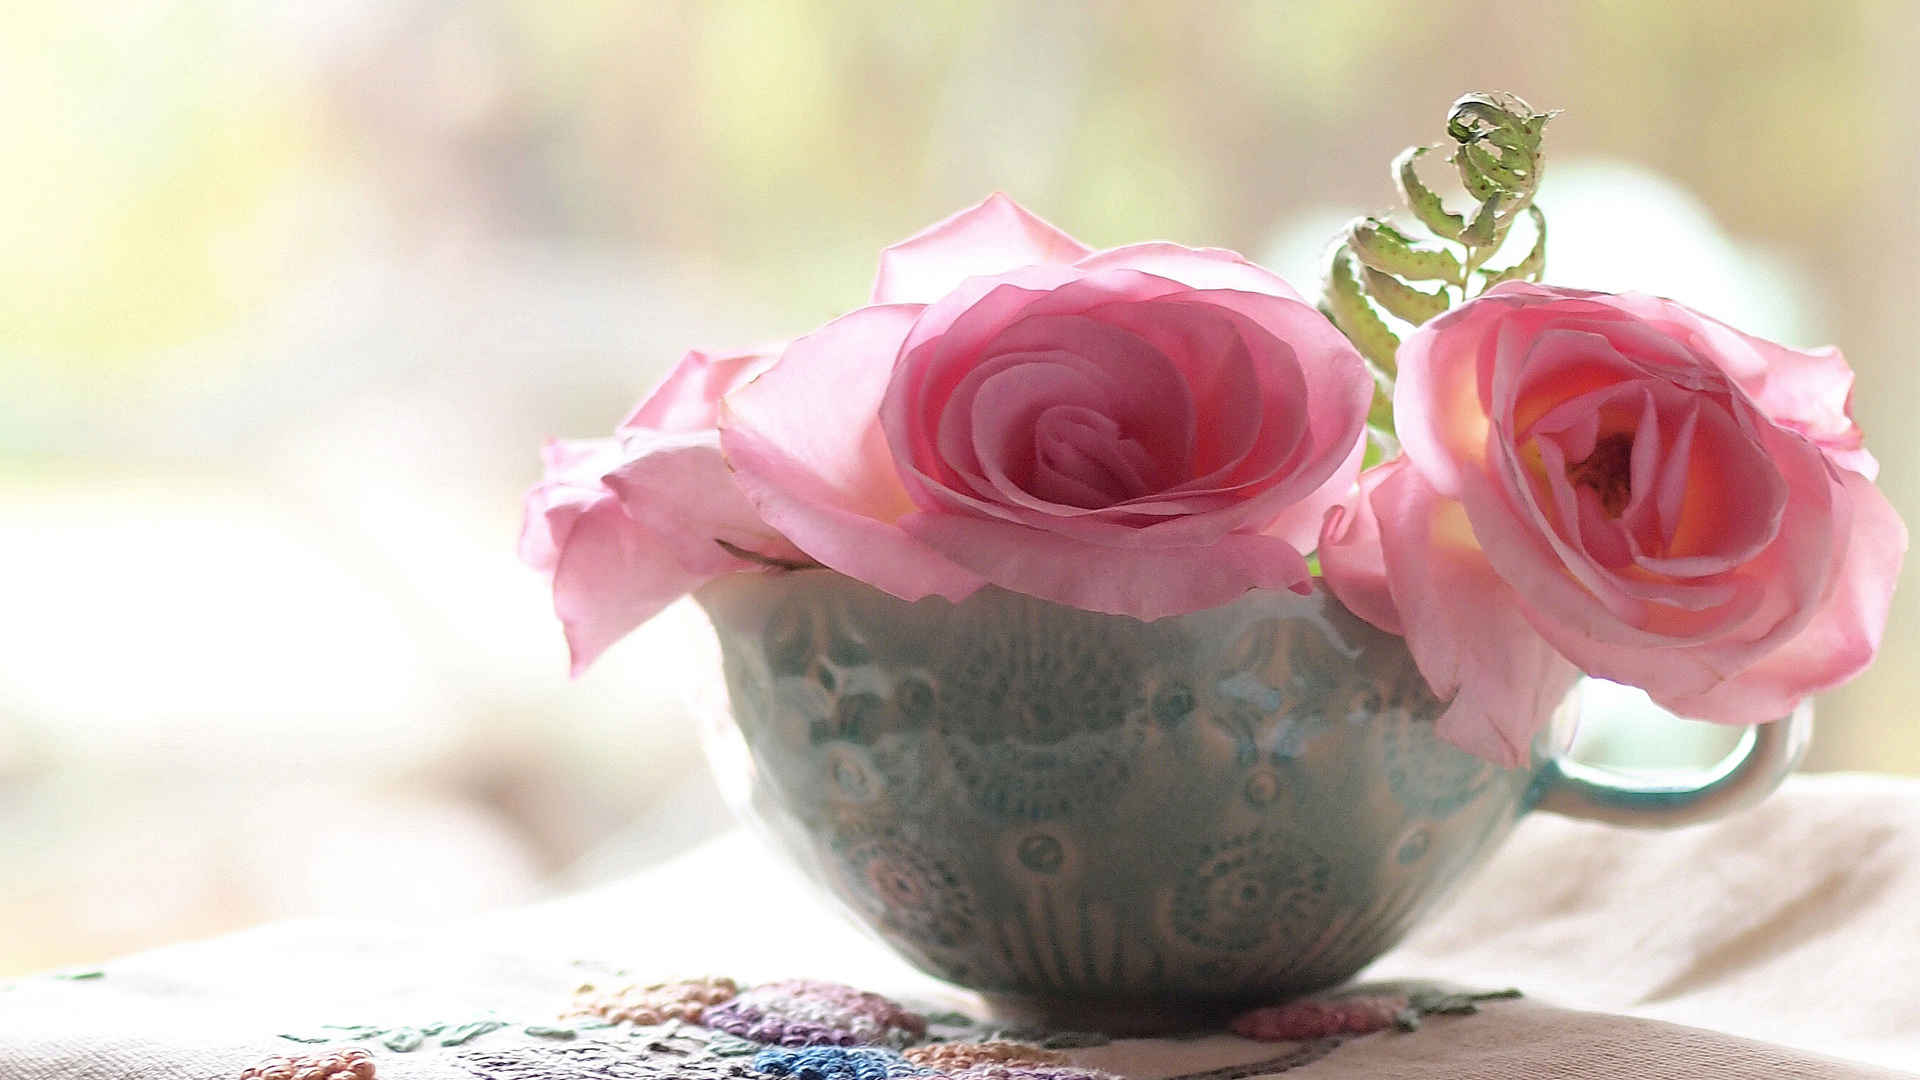 碗里的玫瑰花朵壁纸高清图片唯美